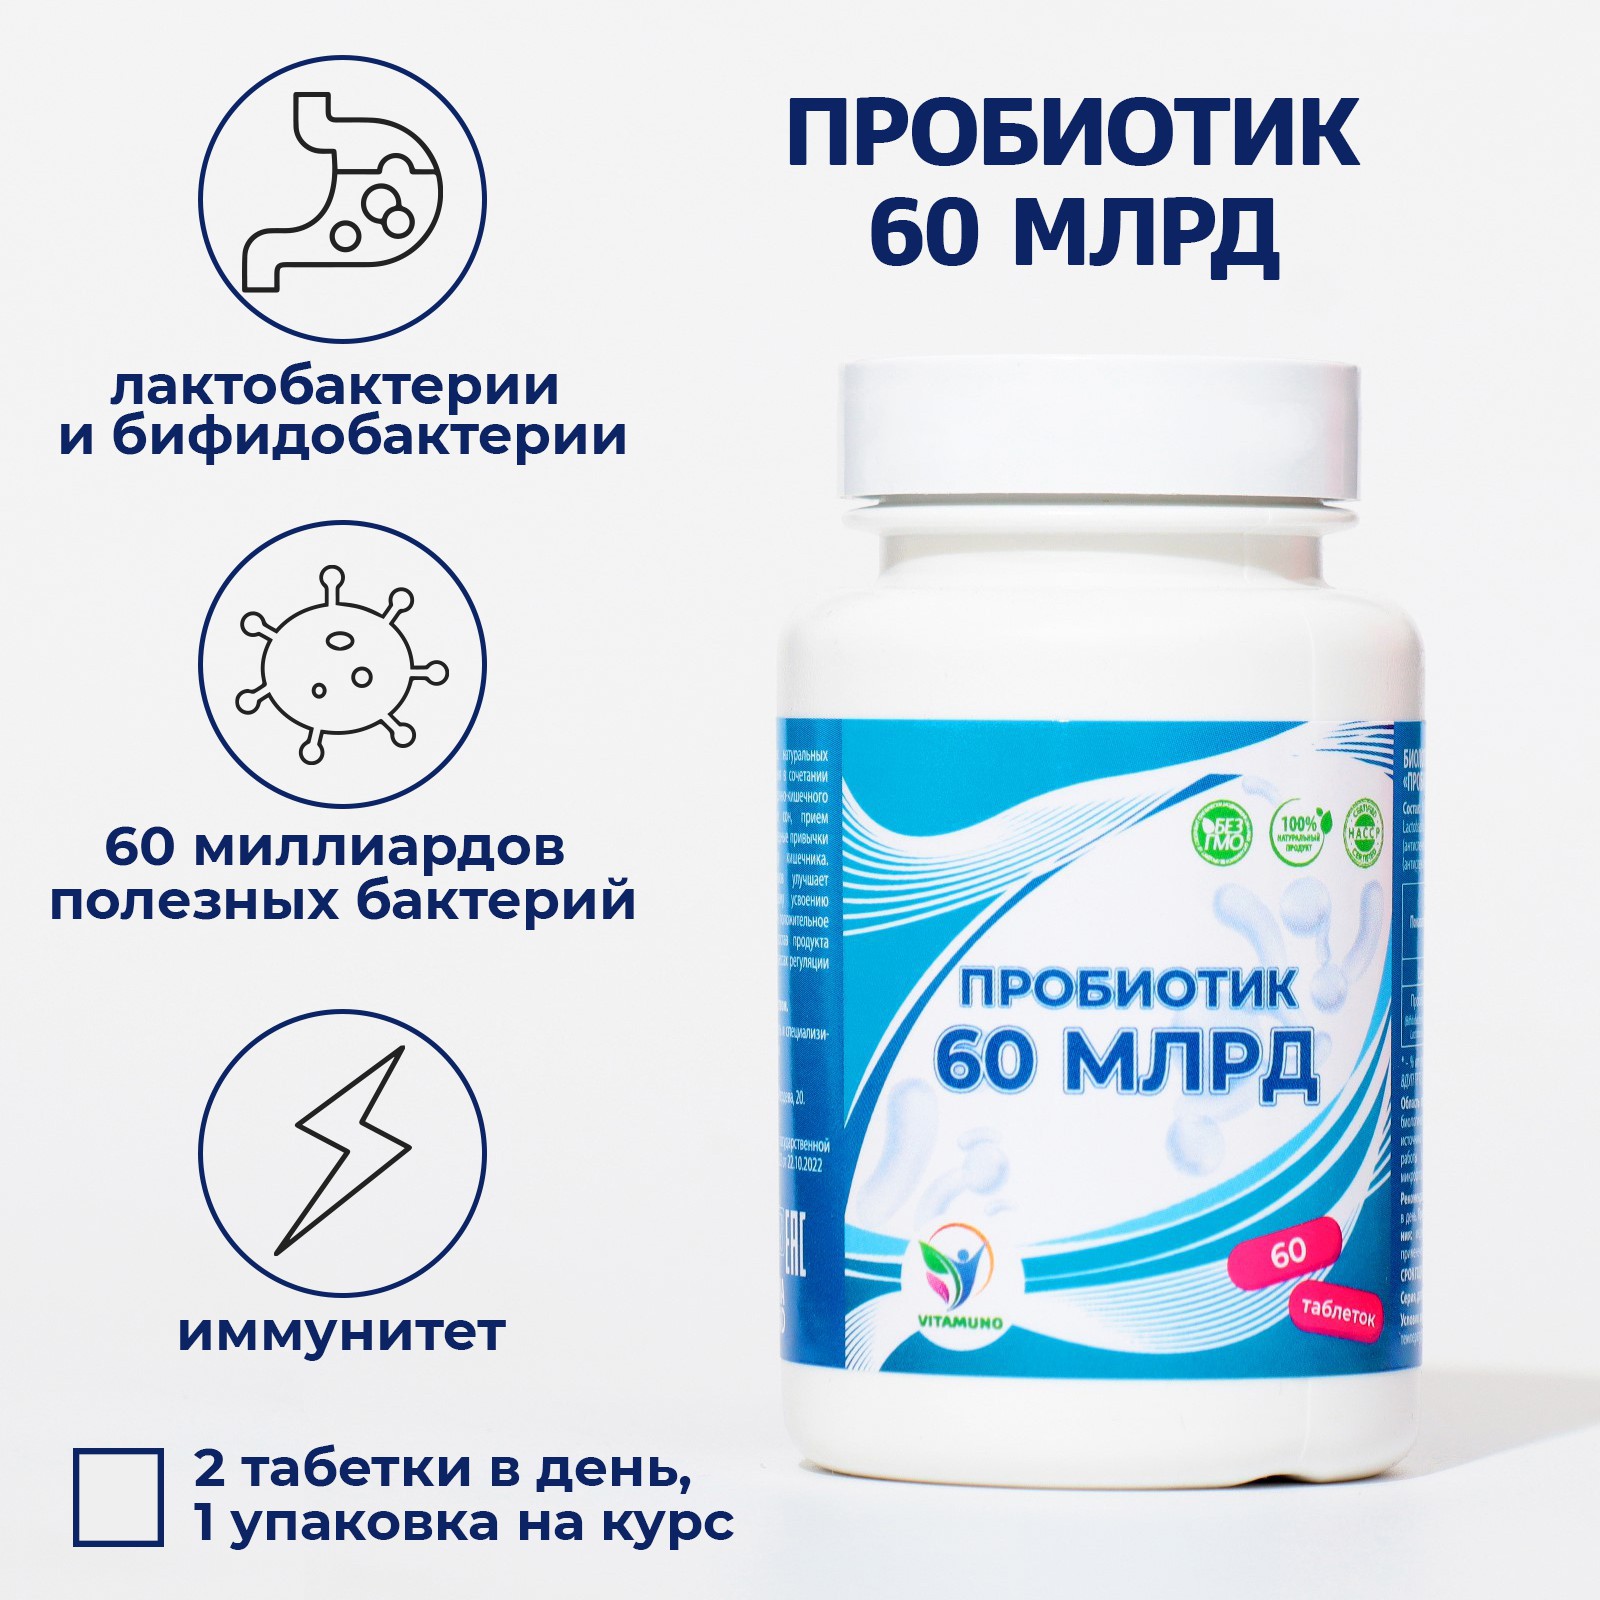 Пробиотик Vitamuno 60 миллиардов 60 таблеток - фото 1